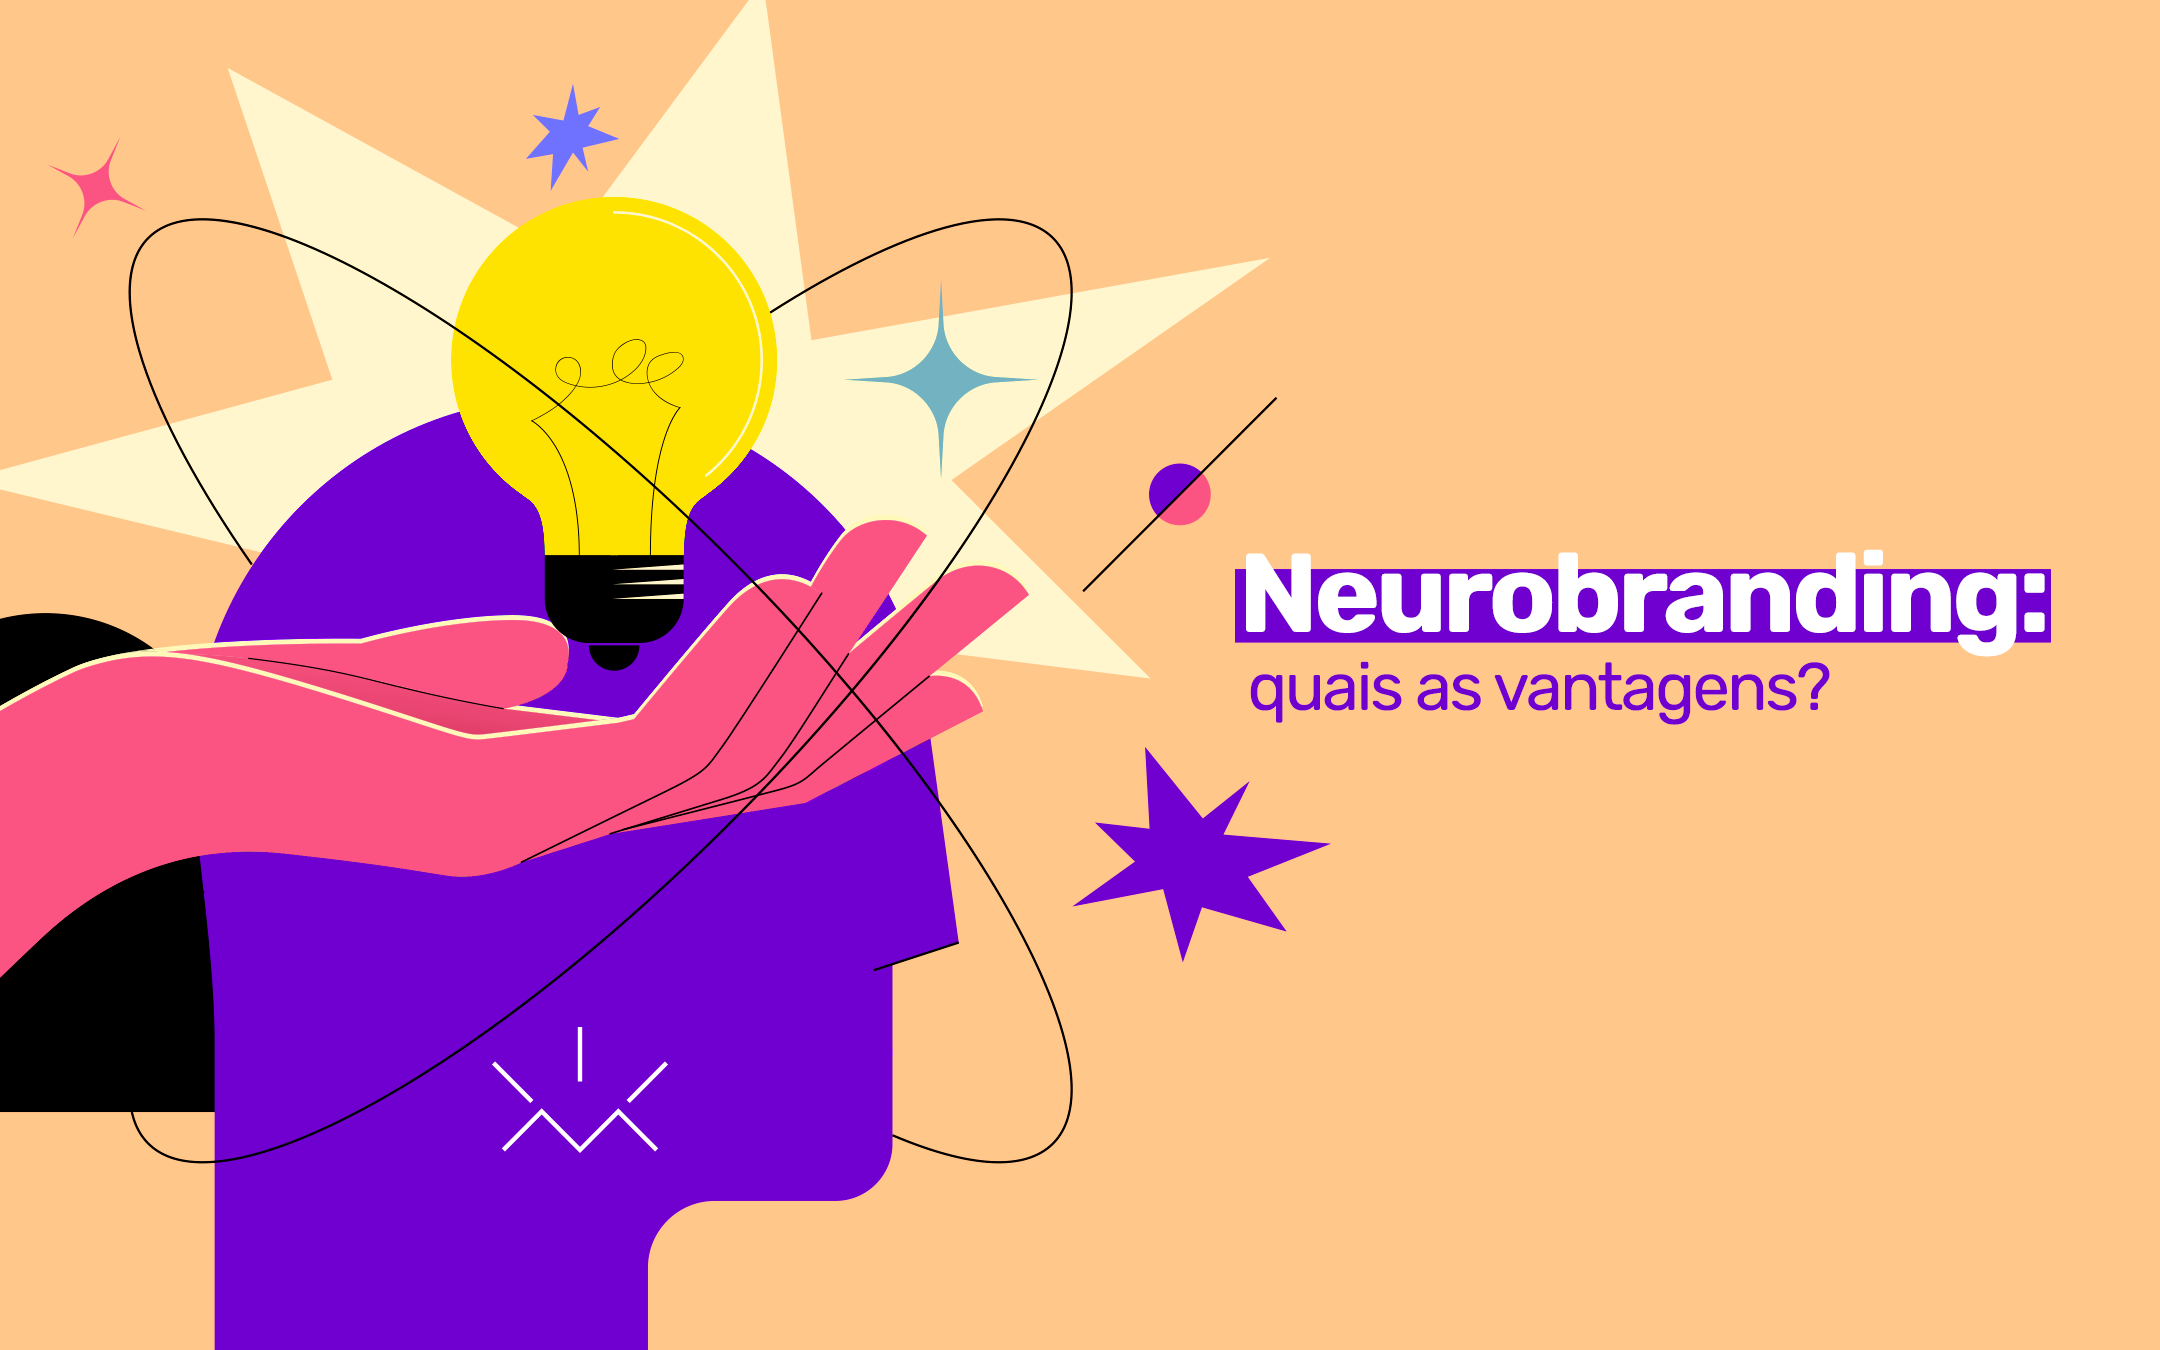 Neurobranding: quais as vantagens?